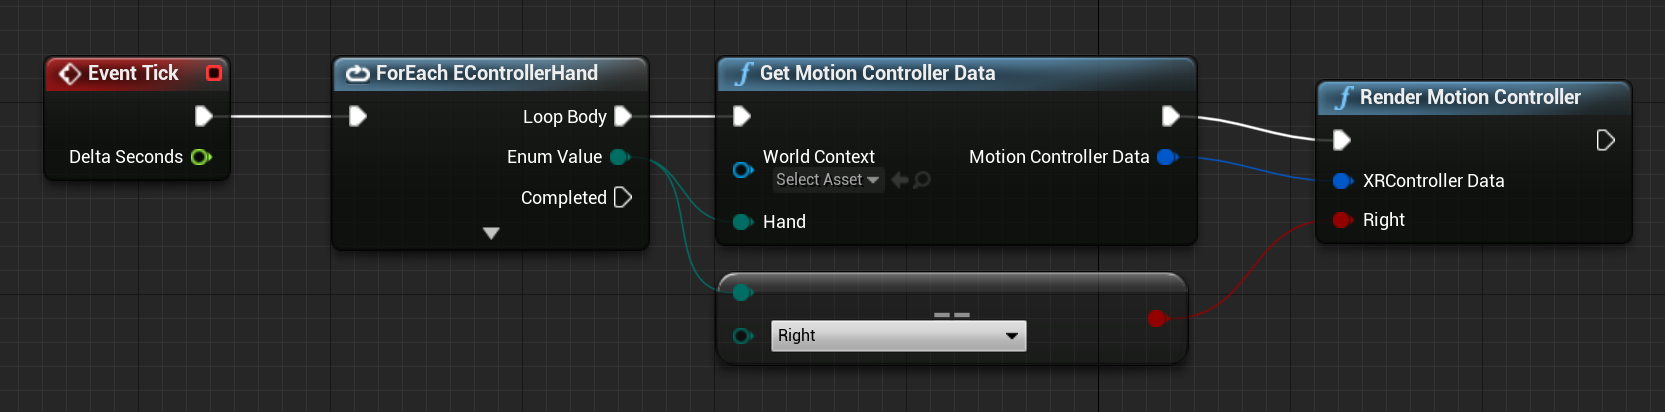 Blueprint of get motion controller data function connected to render motion controller function